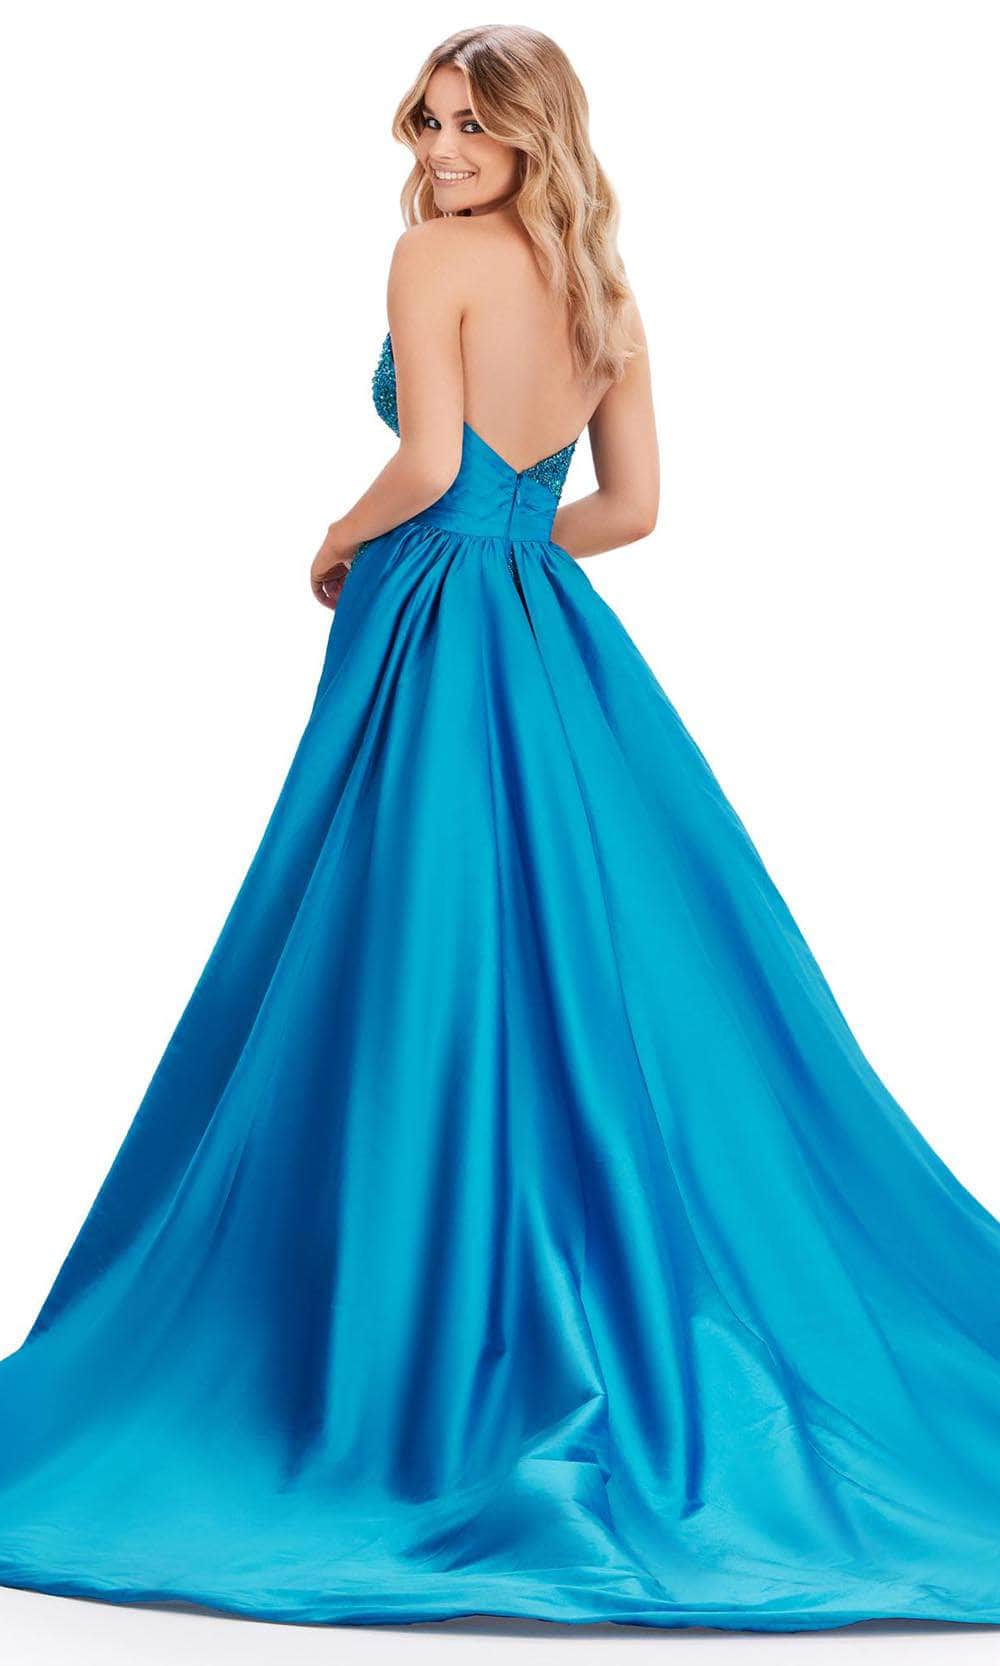 Ashley Lauren 11571 - Beaded Strapless Gown Evening Dresses